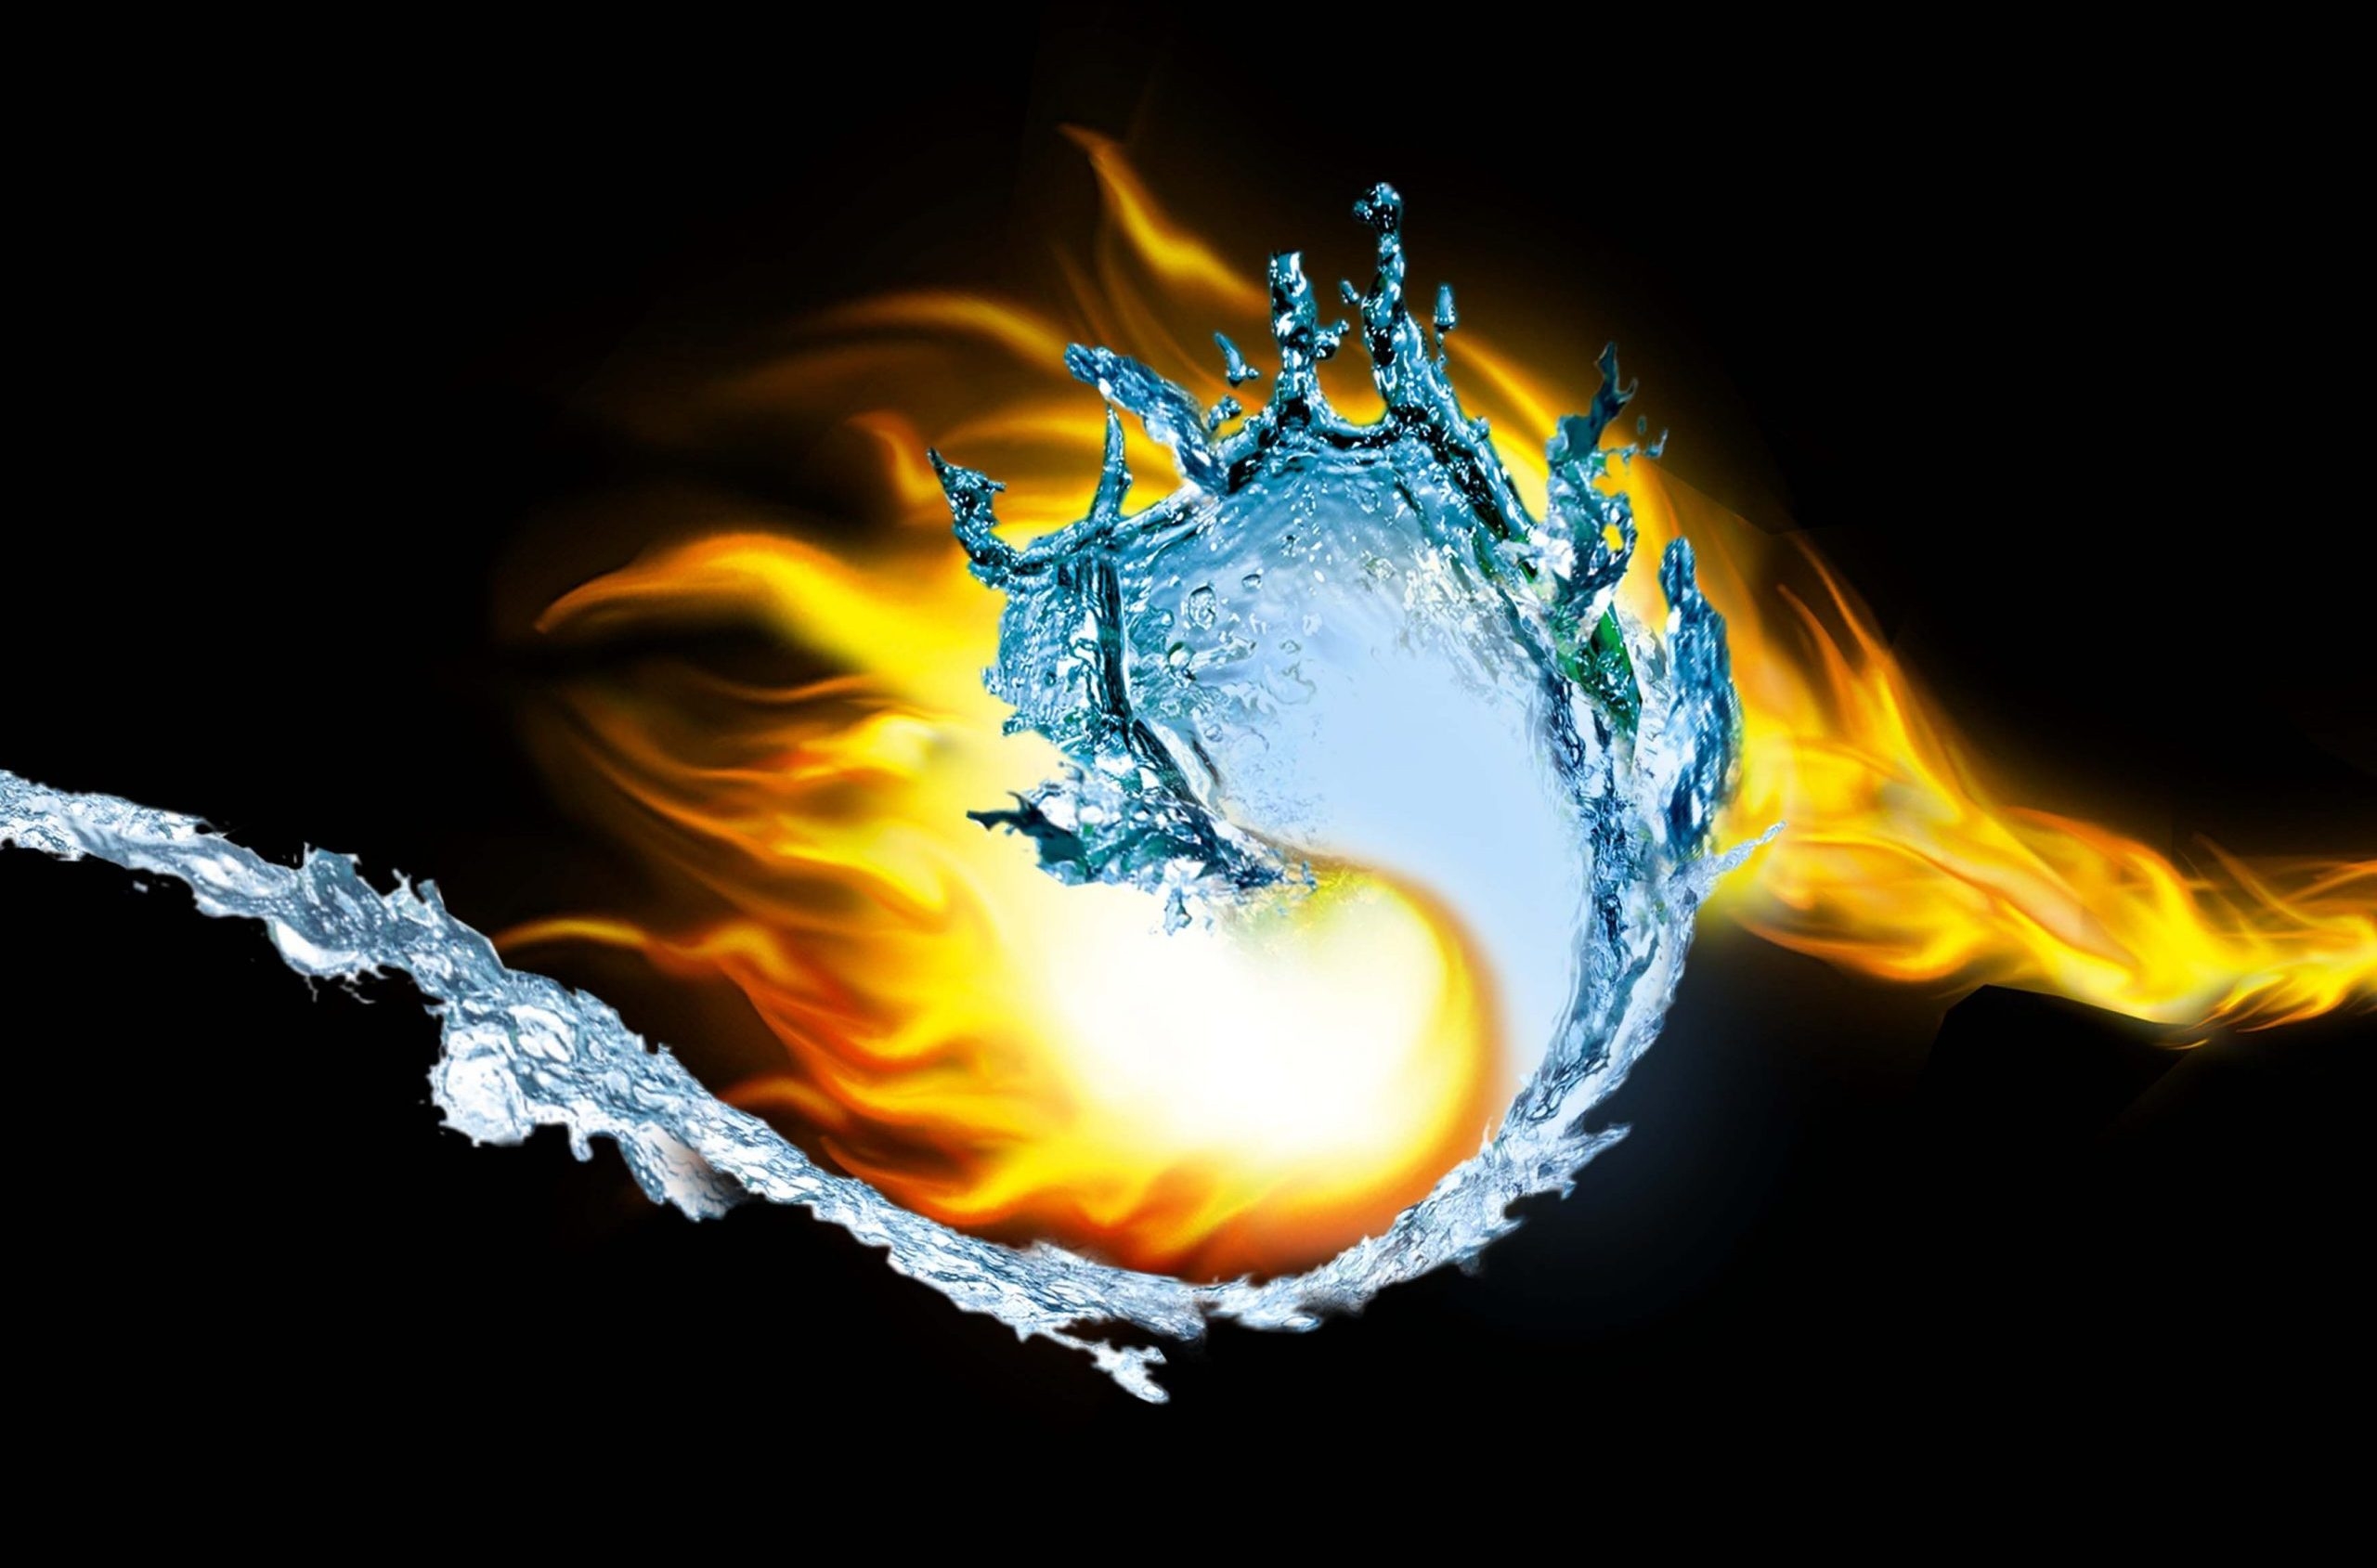 Огонь и вода смысл